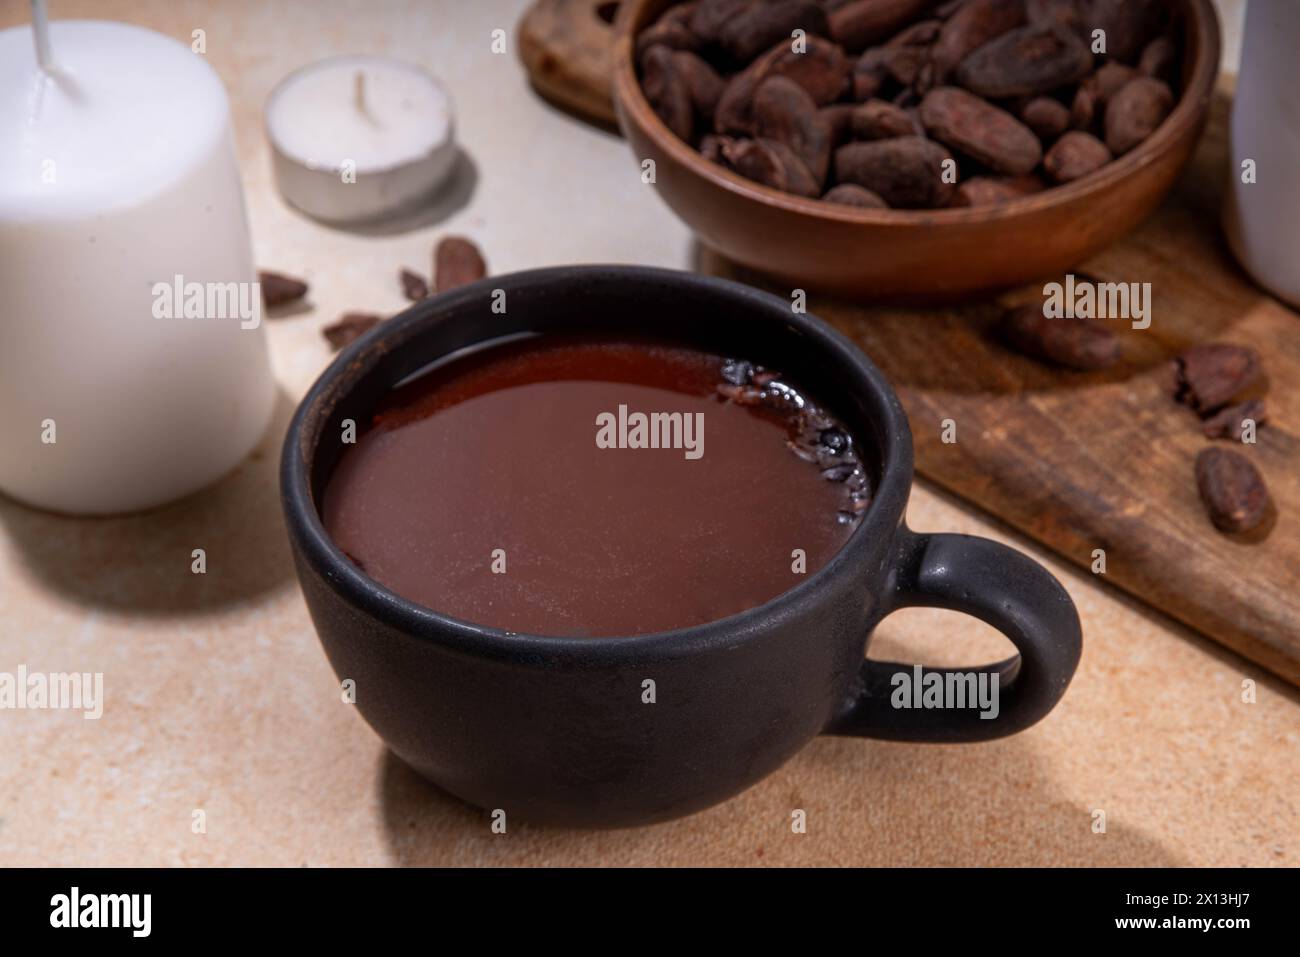 Boisson cérémonielle au cacao. Chocolat cérémonial chaud dans une tasse noire avec des fèves de cacao. Mains de femme tenant une tasse de cacao. Préparation de boisson au chocolat biologique saine Banque D'Images